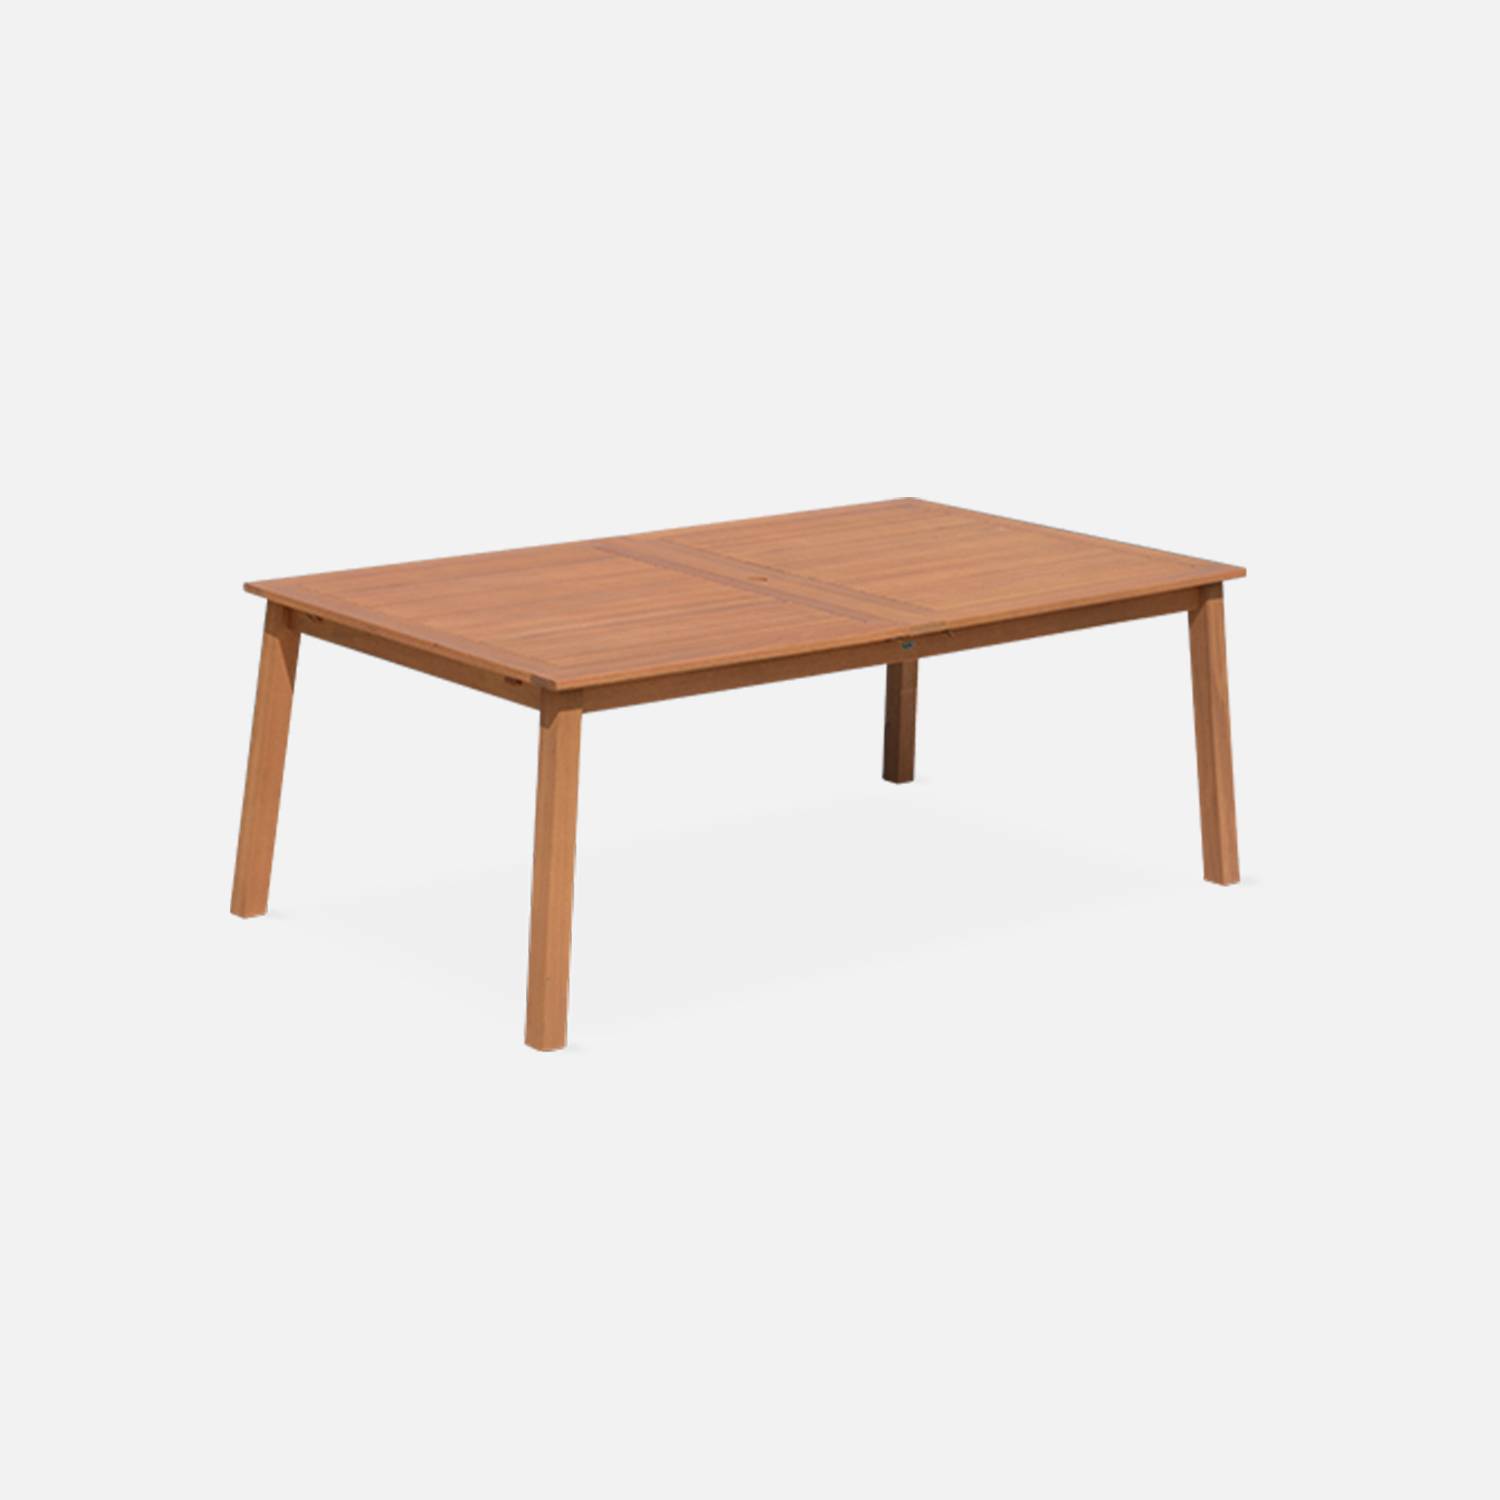 Tavolo da giardino in legno, dimensioni: 200-250-300cm - modello: Almeria - Grande tavolo rettangolare con prolunga, in eucalipto FSC Photo5